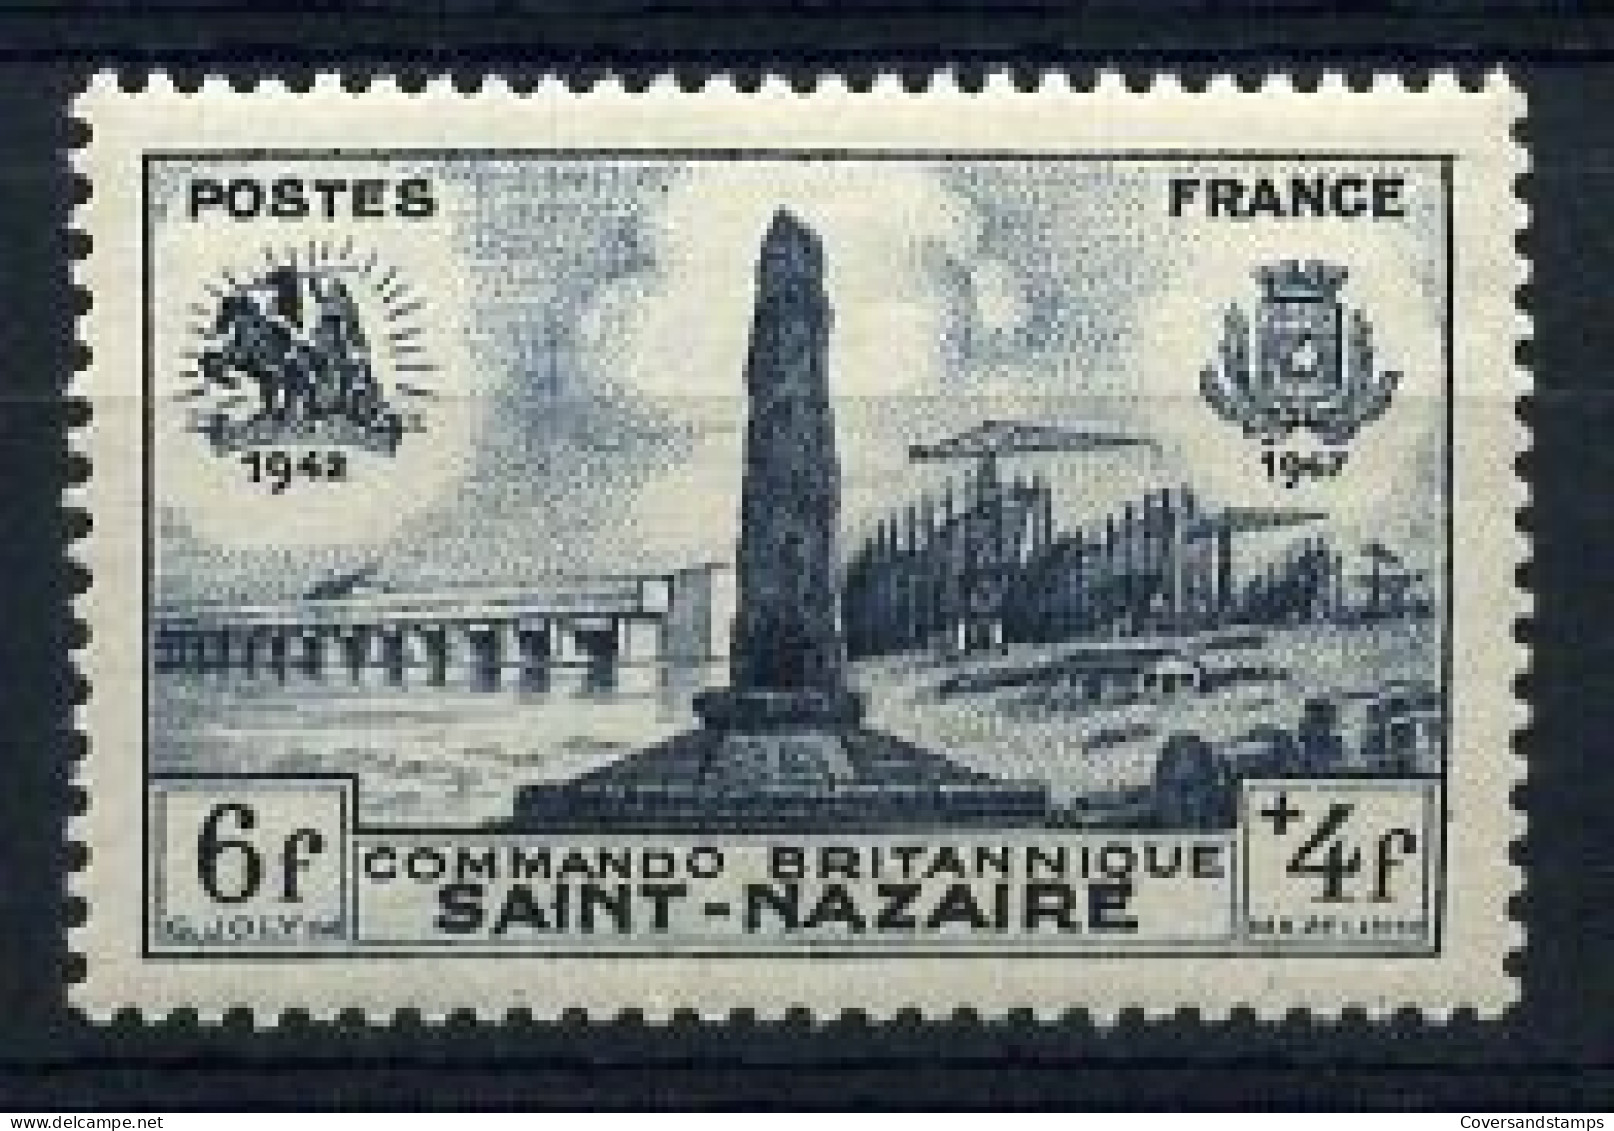 France - 786 - MNH - Neufs